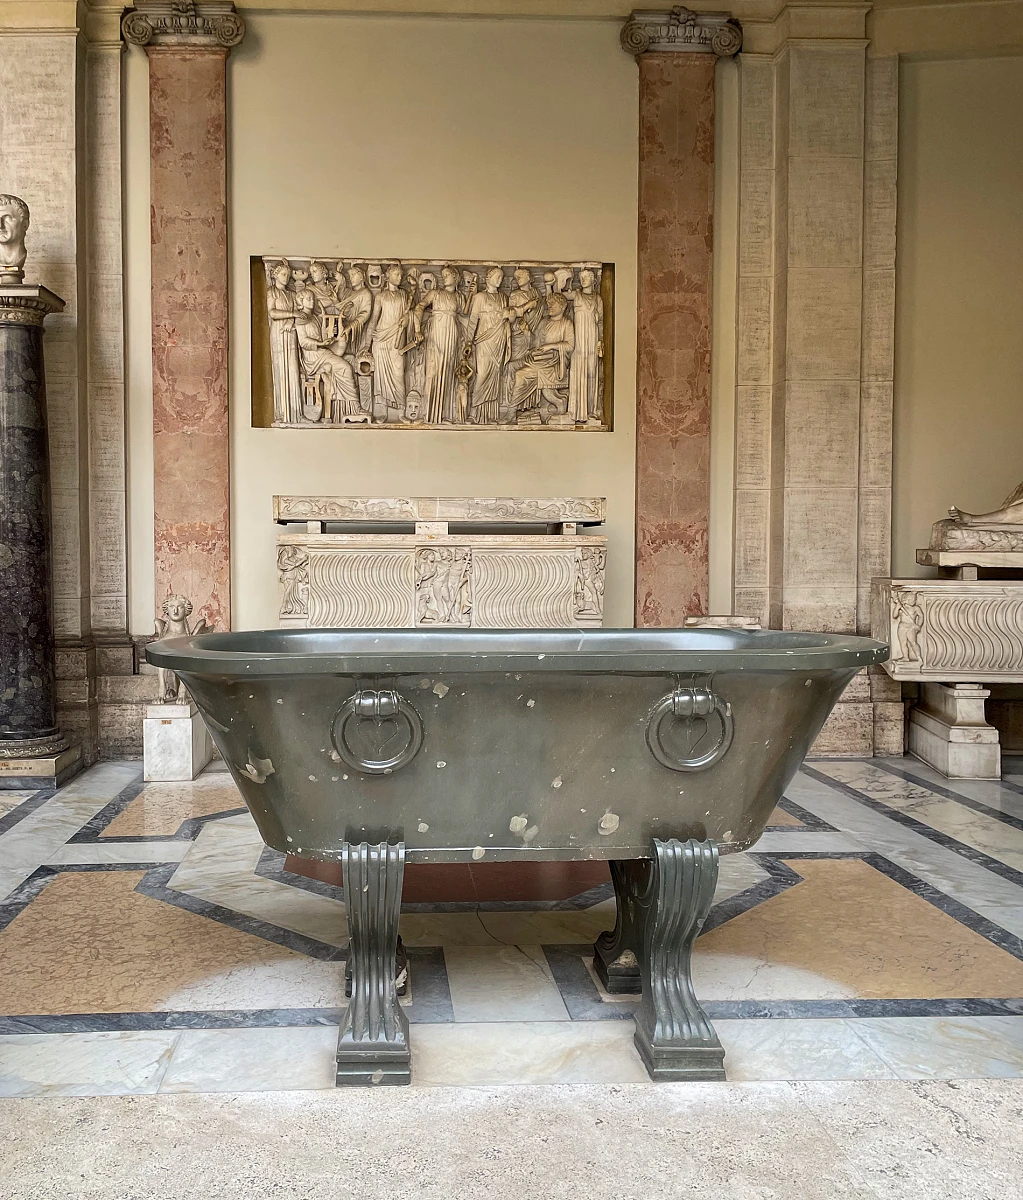 Łaźnie i kultura kąpieli w Starożytnym Rzymie - 2.jpg [1.12 MB]